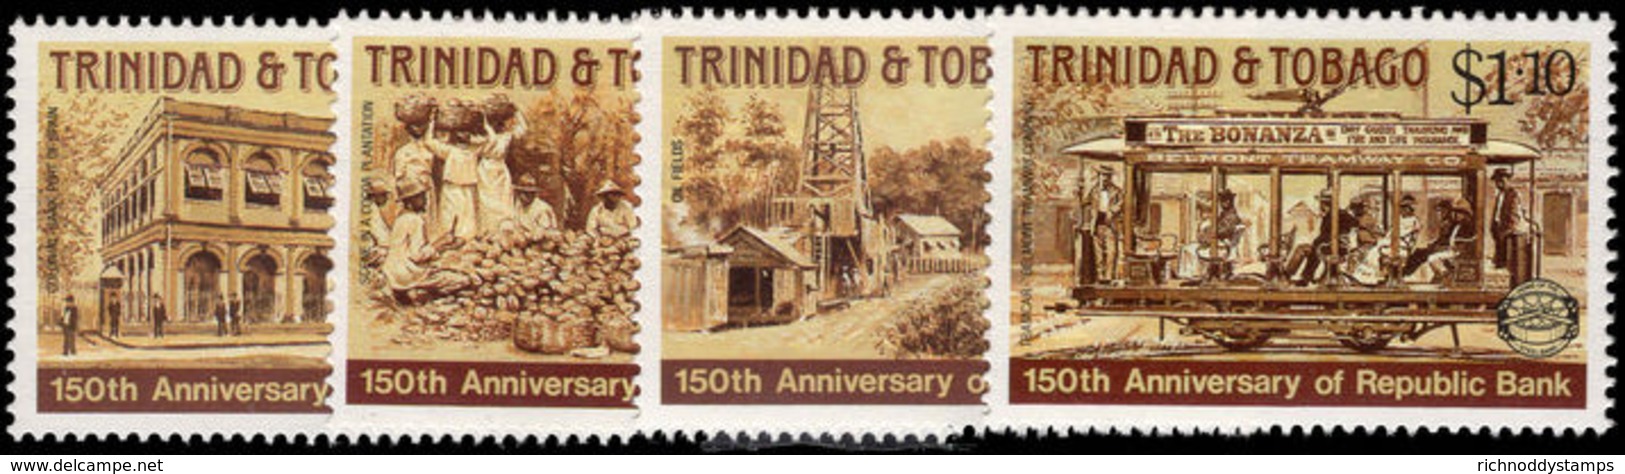 Trinidad & Tobago 1987 Republic Bank Unmounted Mint. - Trinidad & Tobago (1962-...)